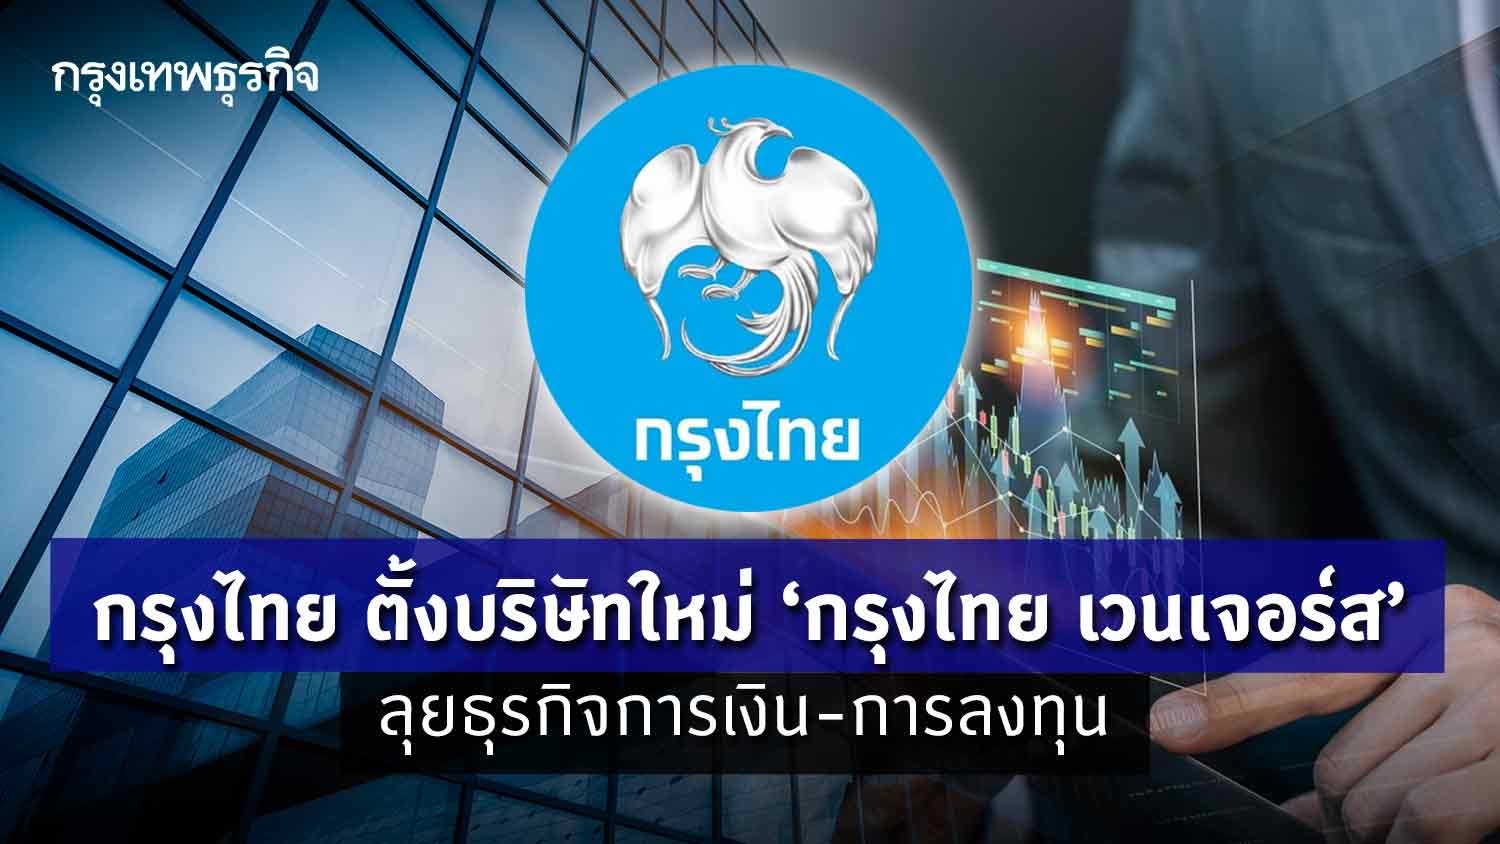 กรุงไทย ตั้งบริษัทใหม่ ‘กรุงไทย เวนเจอร์ส’ ลุยธุรกิจการเงิน-การลงทุน